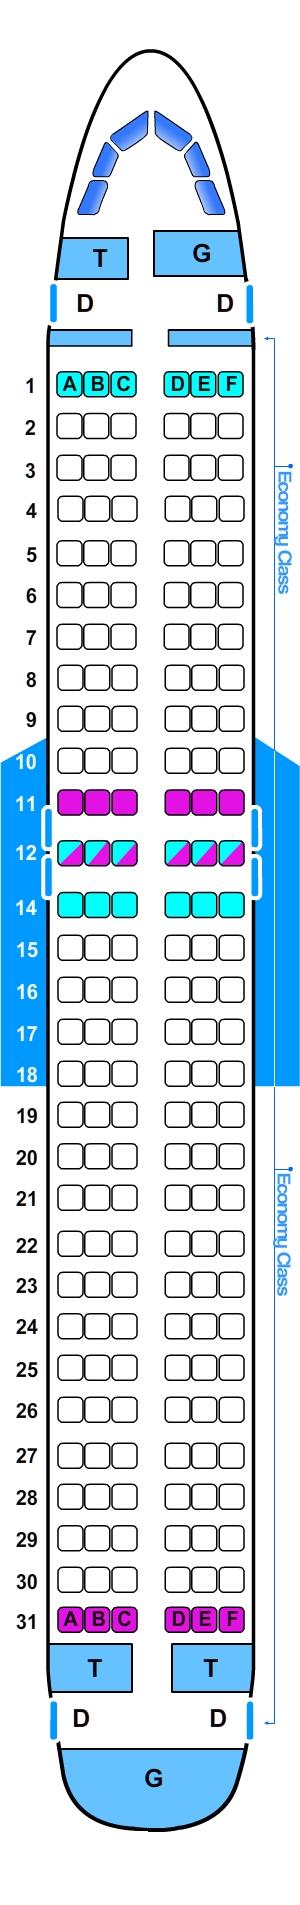 Plan De Cabine Airbus A320 Seatmaestrofr